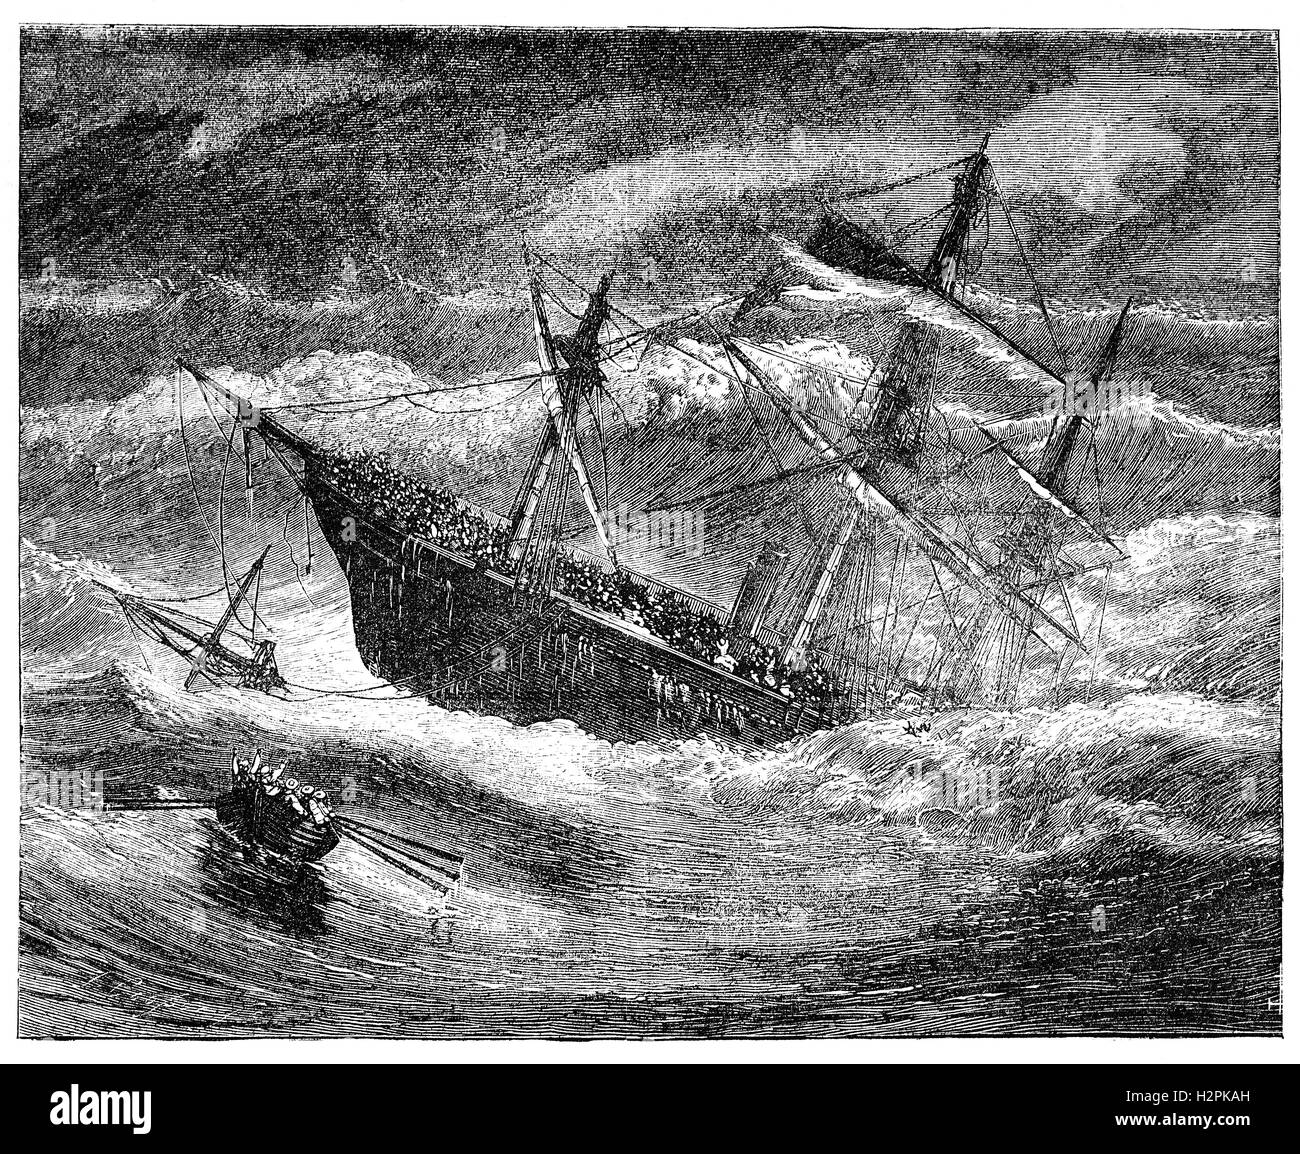 London SS était un bateau à vapeur britannique qui a coulé dans le golfe de Gascogne le 11 janvier 1866. Le navire était en voyage de Gravesend en Angleterre, à Melbourne, en Australie, lorsqu'elle a commencé à prendre de l'eau. Le bateau a été surchargé de cargo et de naviguer. Seuls 19 survivants ont réussi à s'échapper du naufrage bateau par bateau de sauvetage, laissant la mort de 220. Sa perte d'une attention accrue en Grande-Bretagne à l'état dangereux des navires surchargés par les armateurs peu scrupuleux et a un rôle majeur dans la campagne de Samuel Plimsoll de réforme voyage Banque D'Images